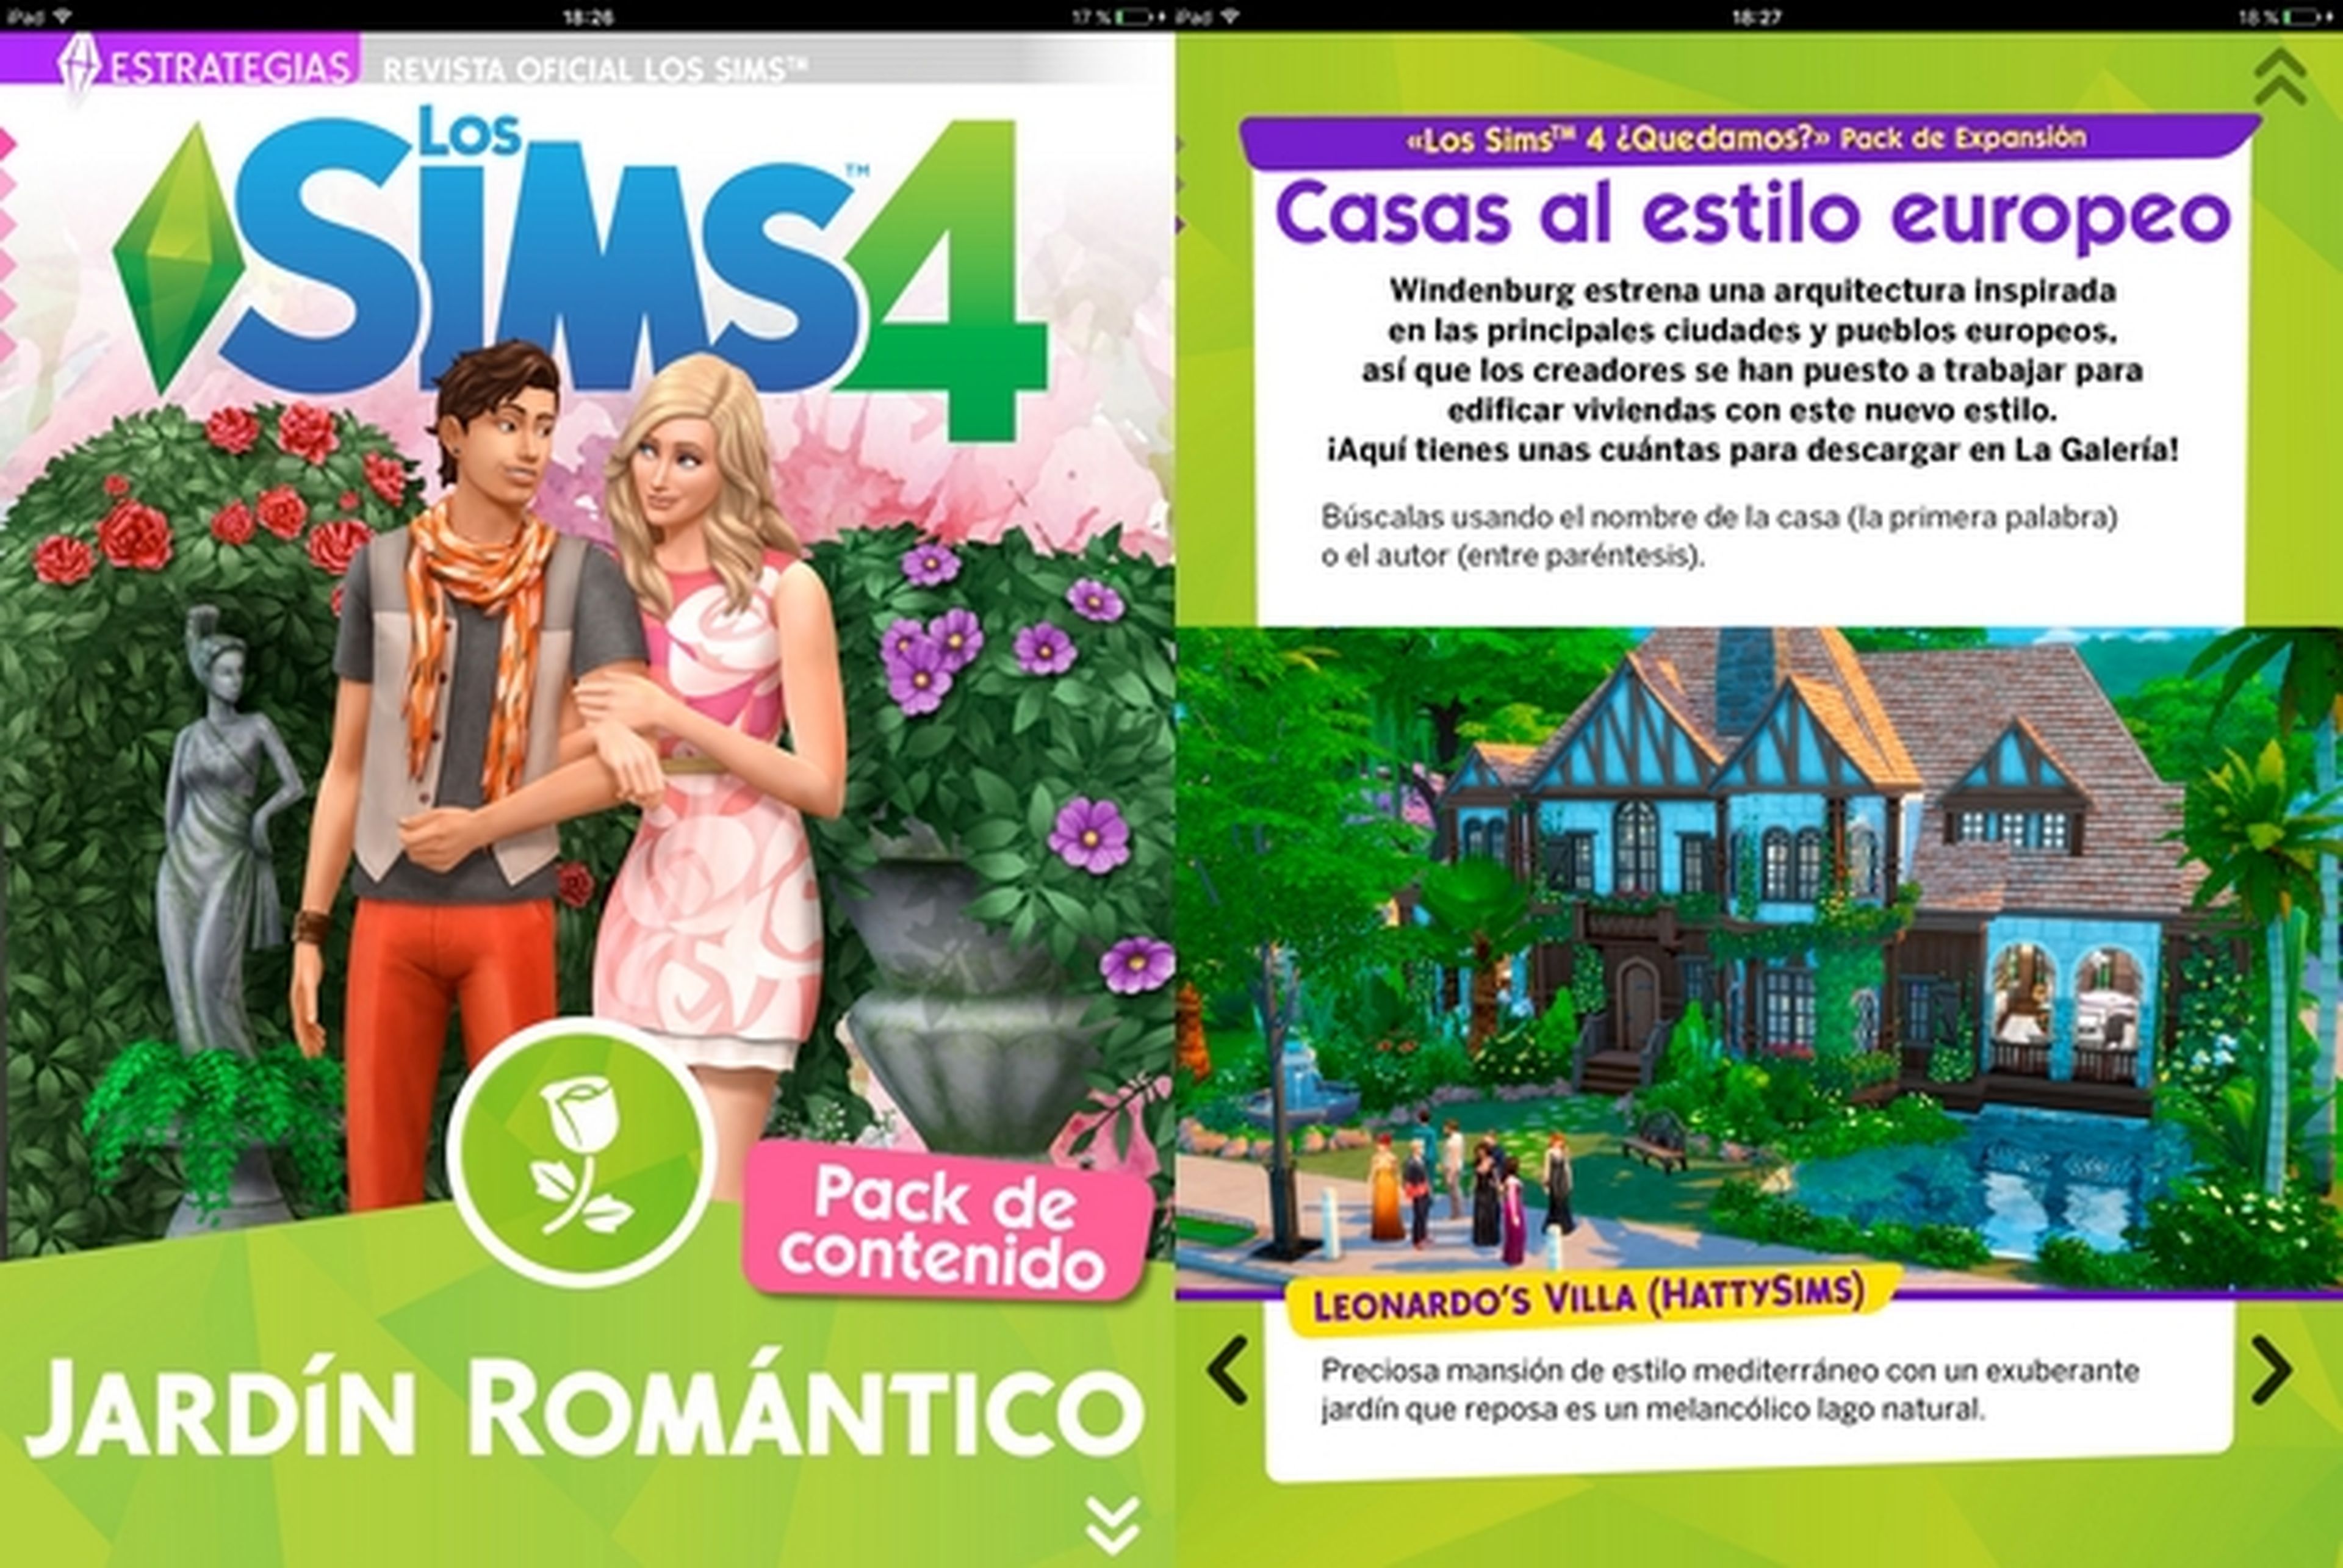 Los Sims cumplen 16 años en la Revista Oficial de los Sims número 23